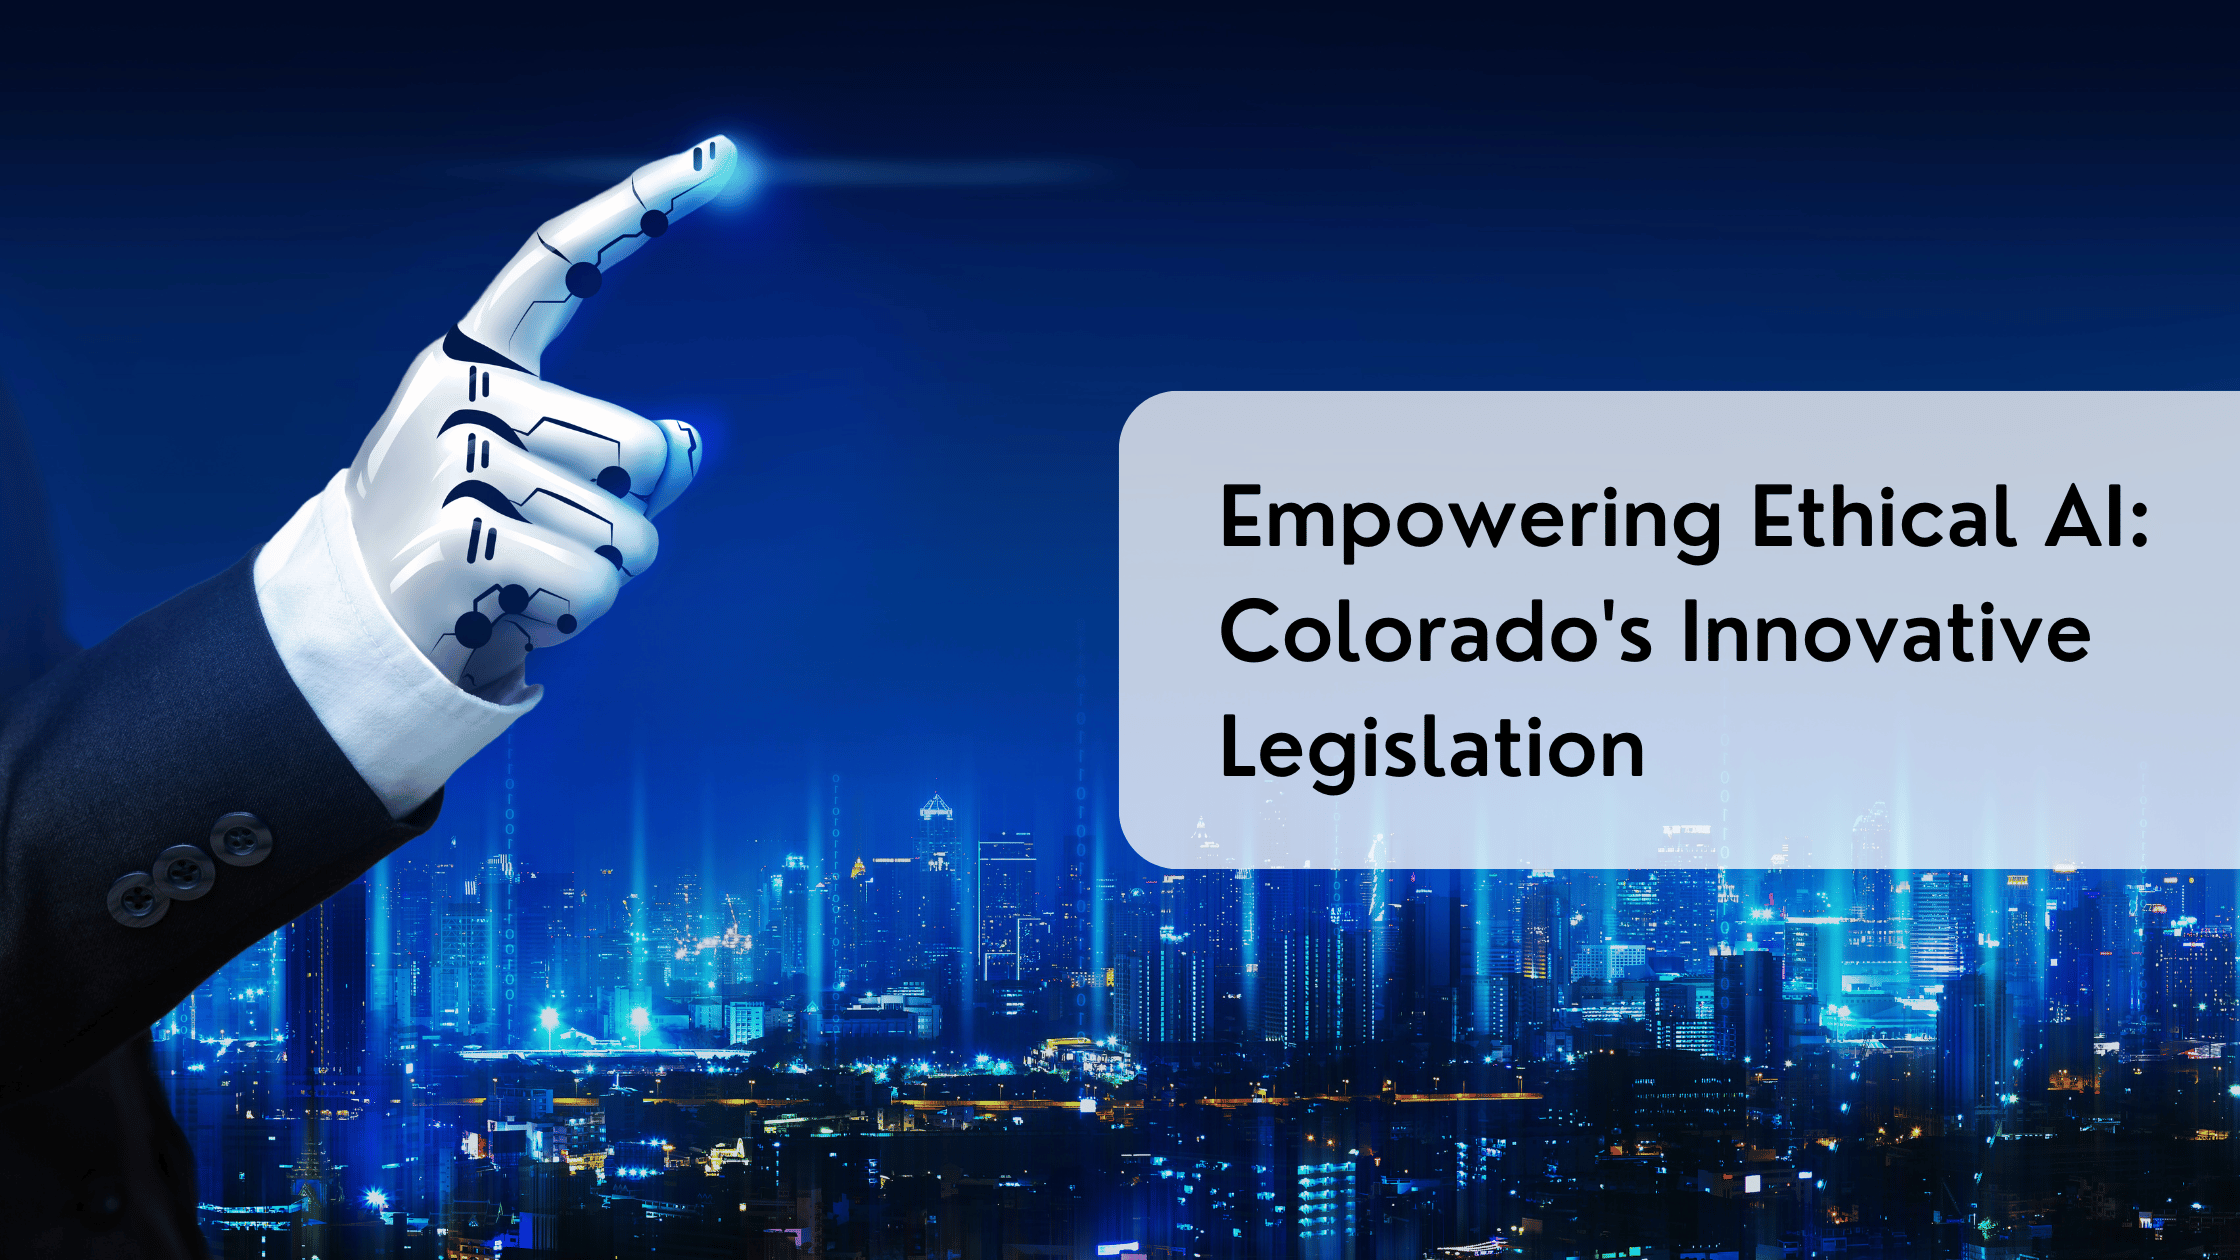 Empowering Ethical AI: Colorado's Innovative Legislation